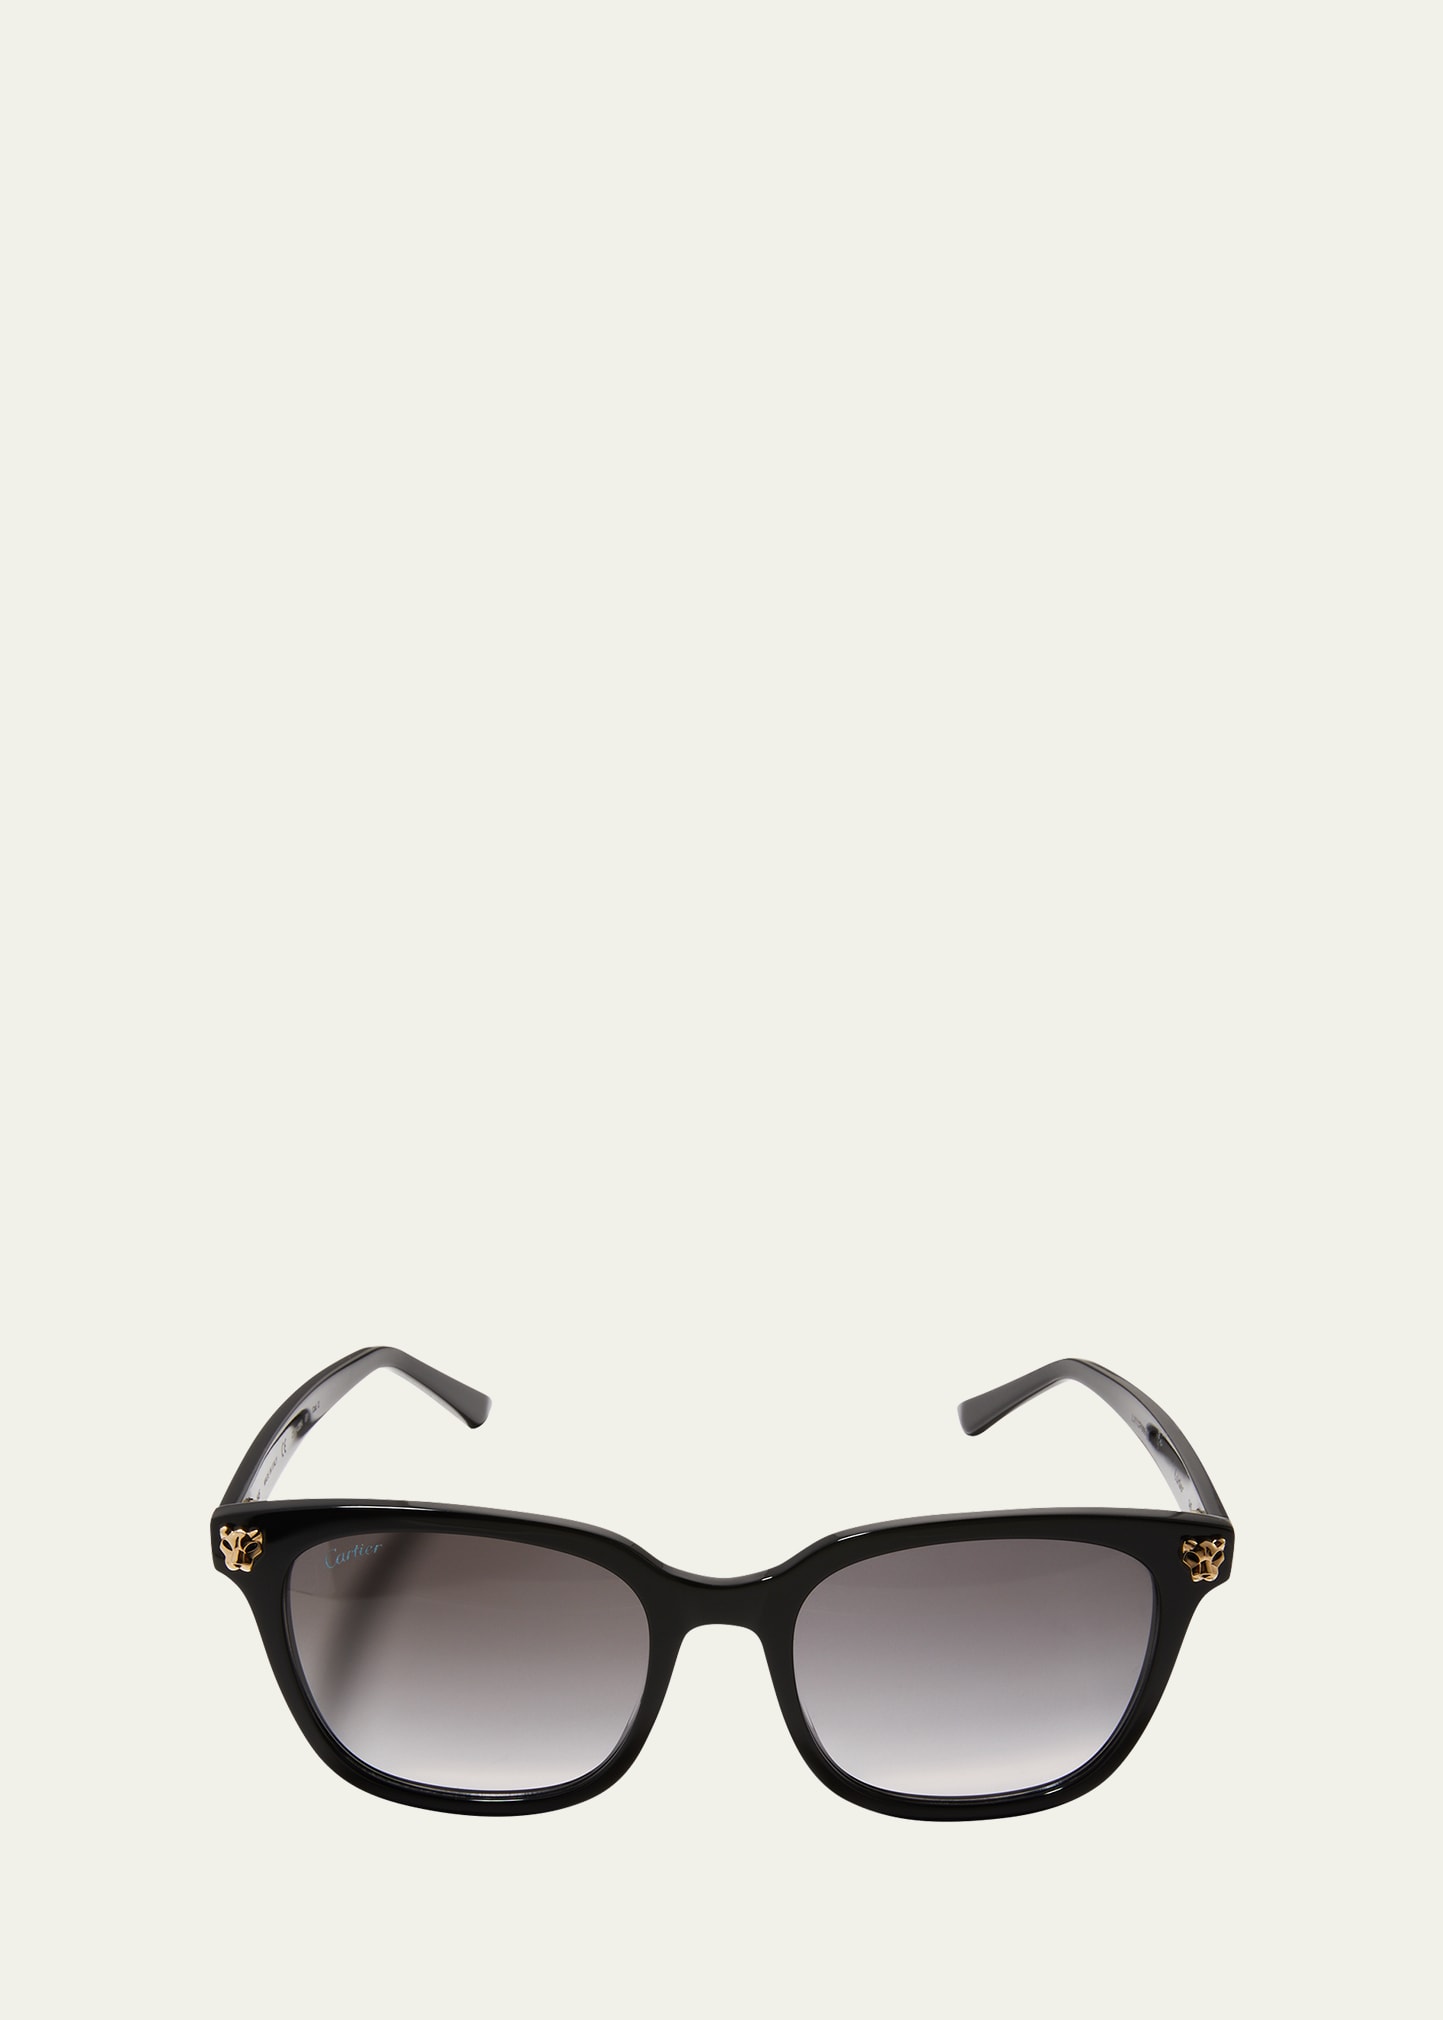 Cartier Men's Panthére Square Acetate Sunglasses In Black